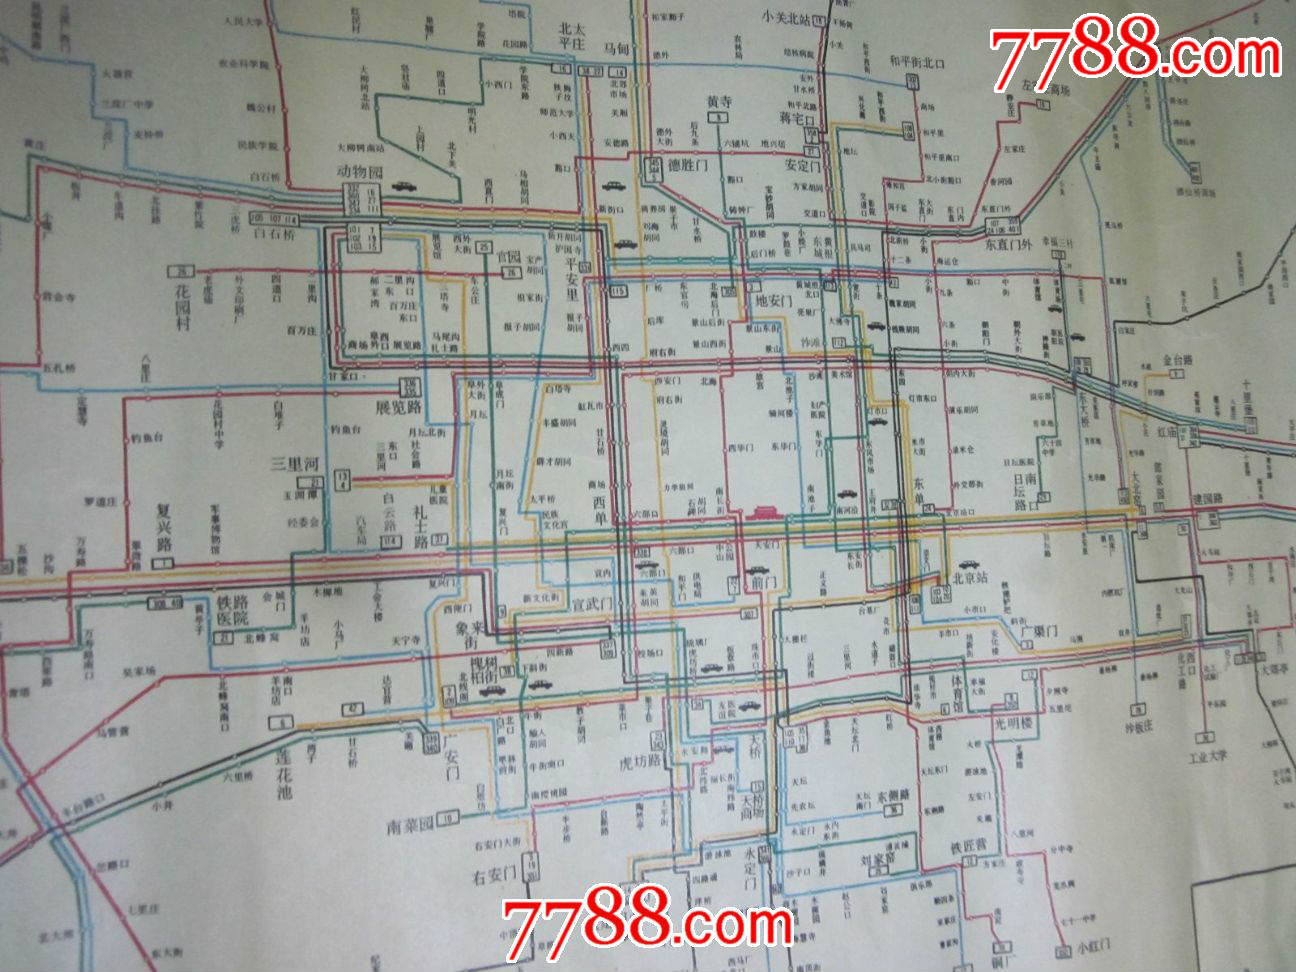 少见1979年北京市公共交通线路示意图,2开